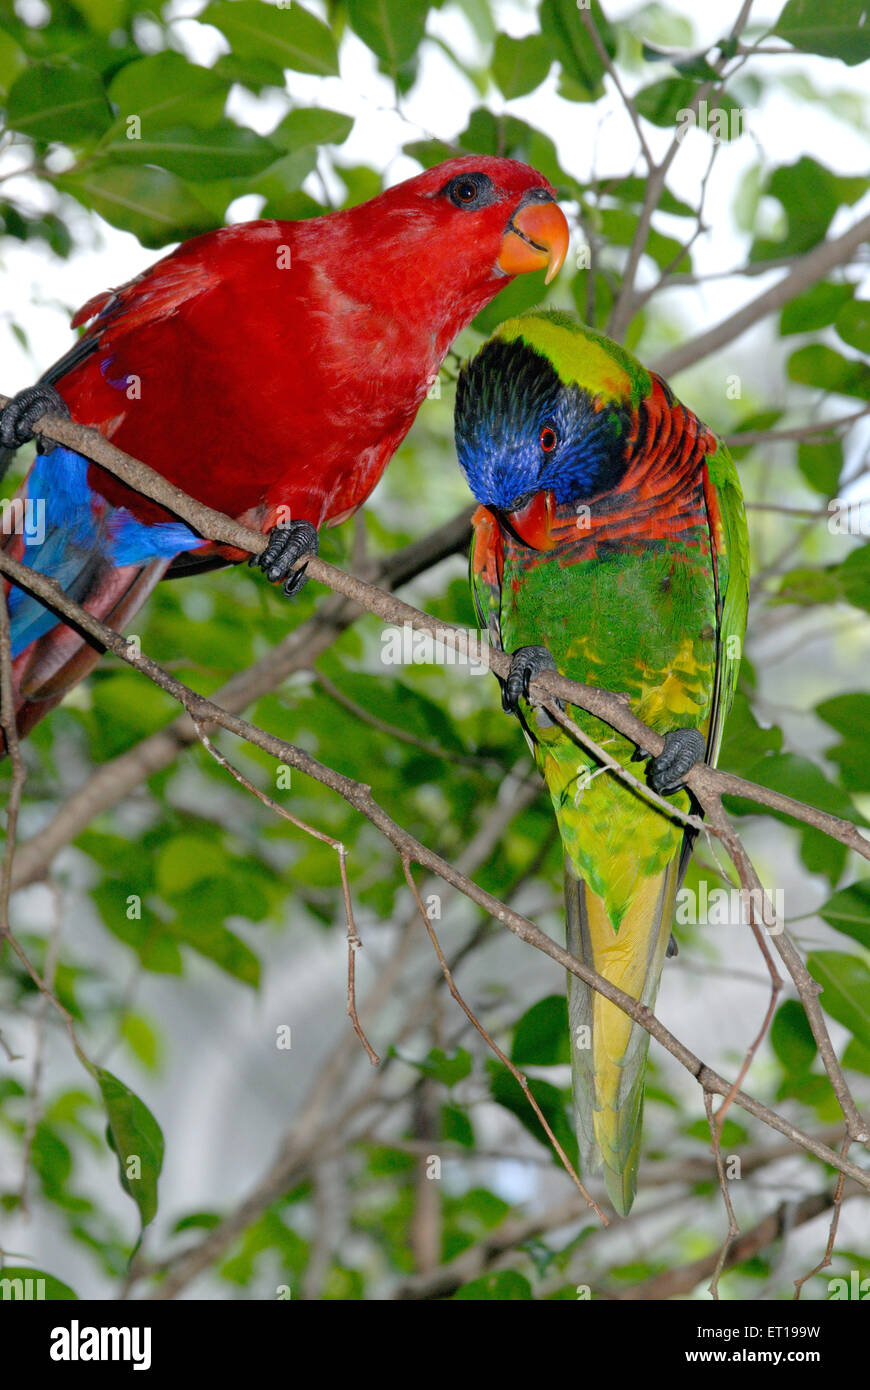 Macaw Bird, perroquet du Nouveau monde, volière du parc ornithologique de Jurong, Jurong, Singapour, Asie Banque D'Images